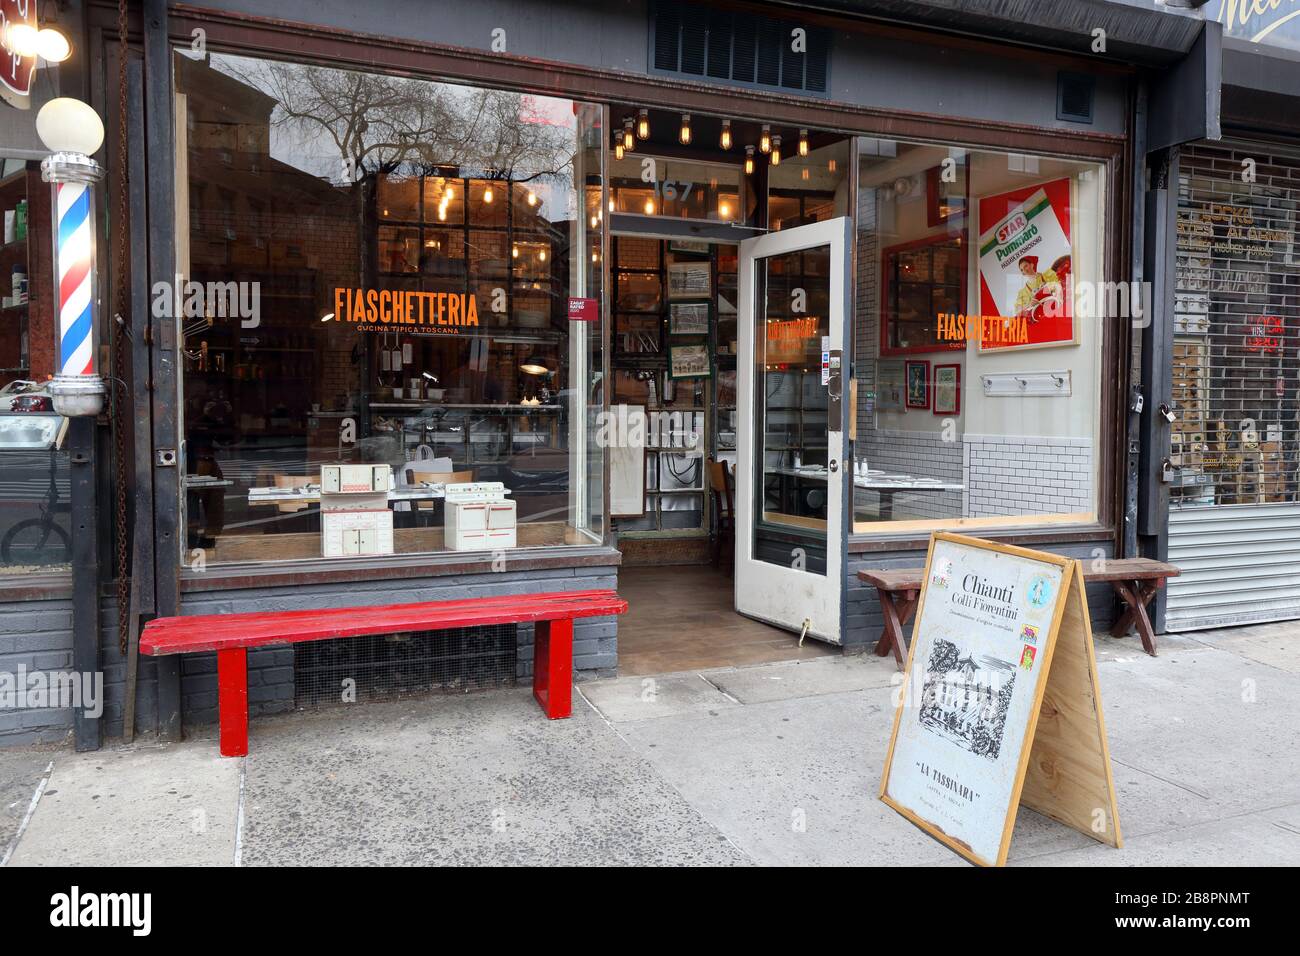 [Historisches Schaufenster] Fiaschetteria 'Pistoia', 167 7. Avenue South, New York, NYC Schaufensterfoto eines toskanischen Cafés in Greenwich Village. Stockfoto